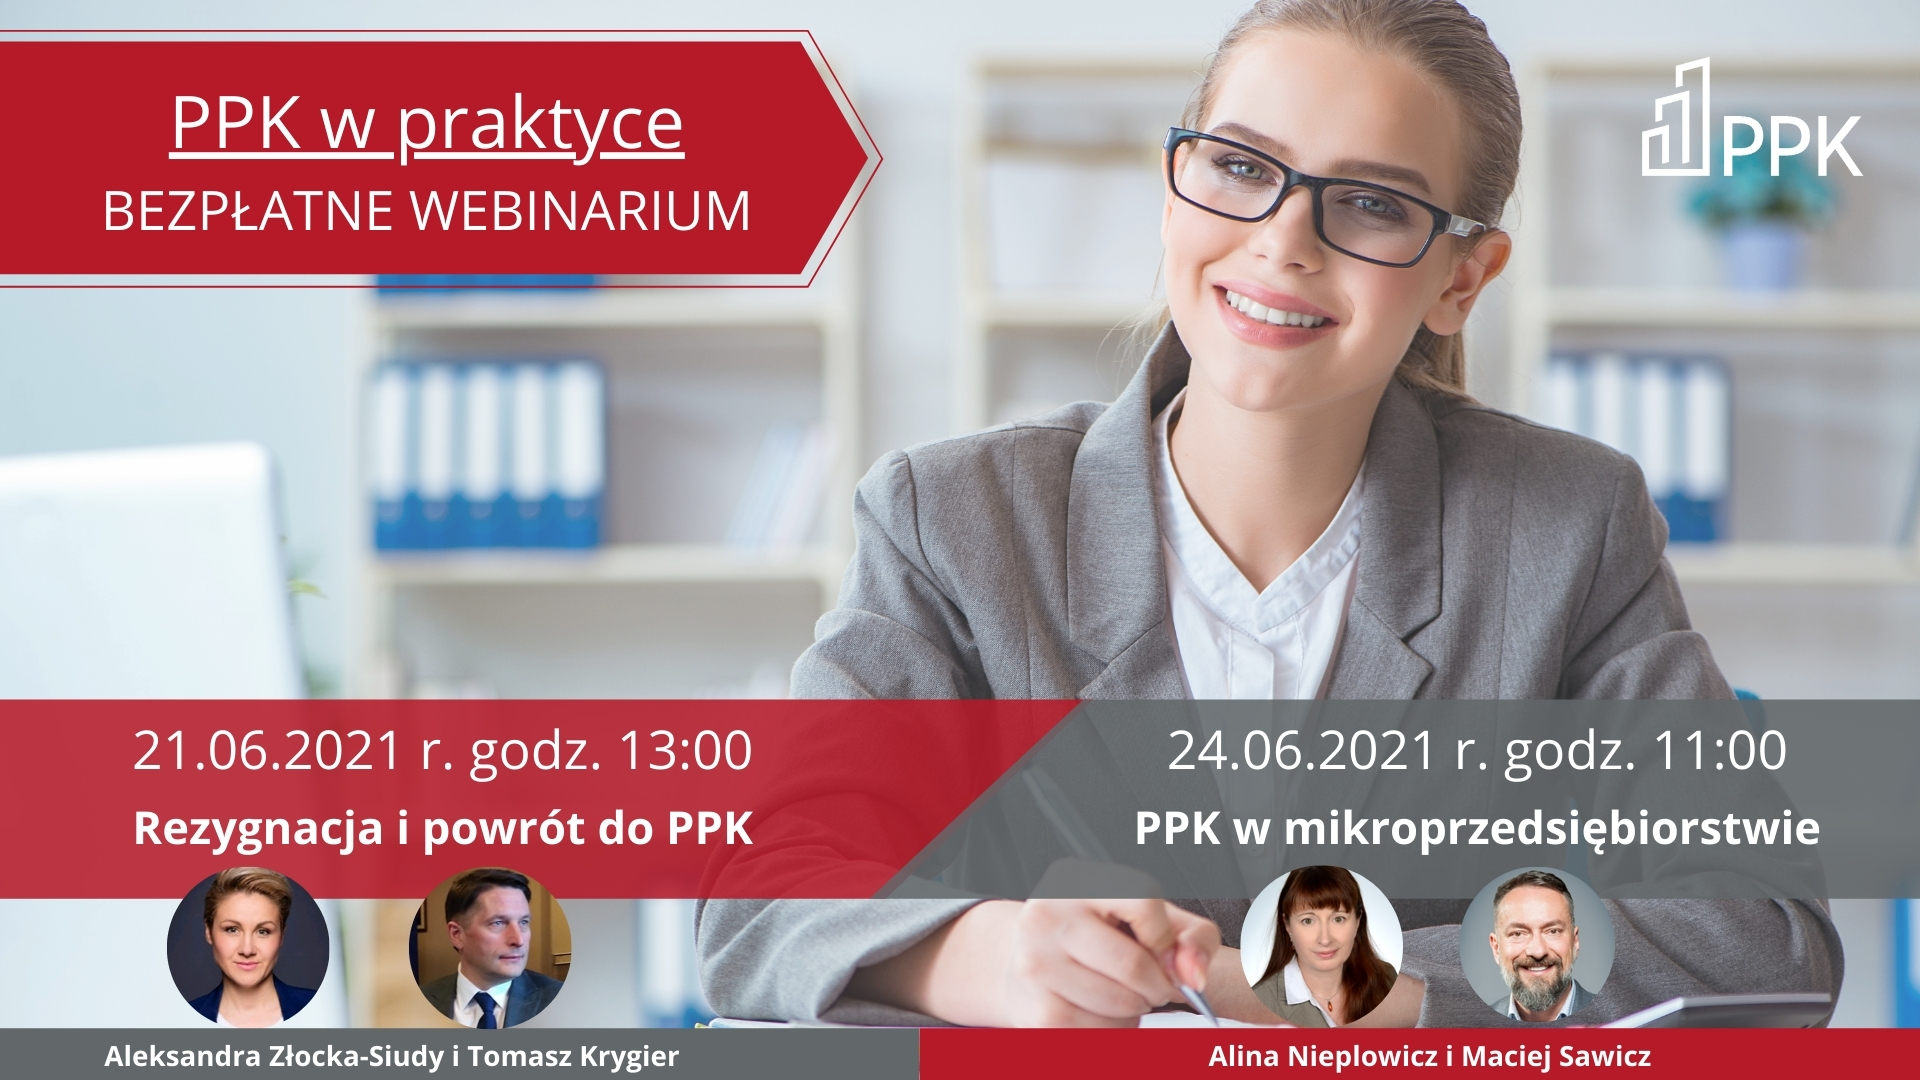 Rezygnacja i powrót do PPK oraz PPK w mikroprzedsiębiorstwie - webinaria „PPK w praktyce” dla kadr i płac 21 i 24.06